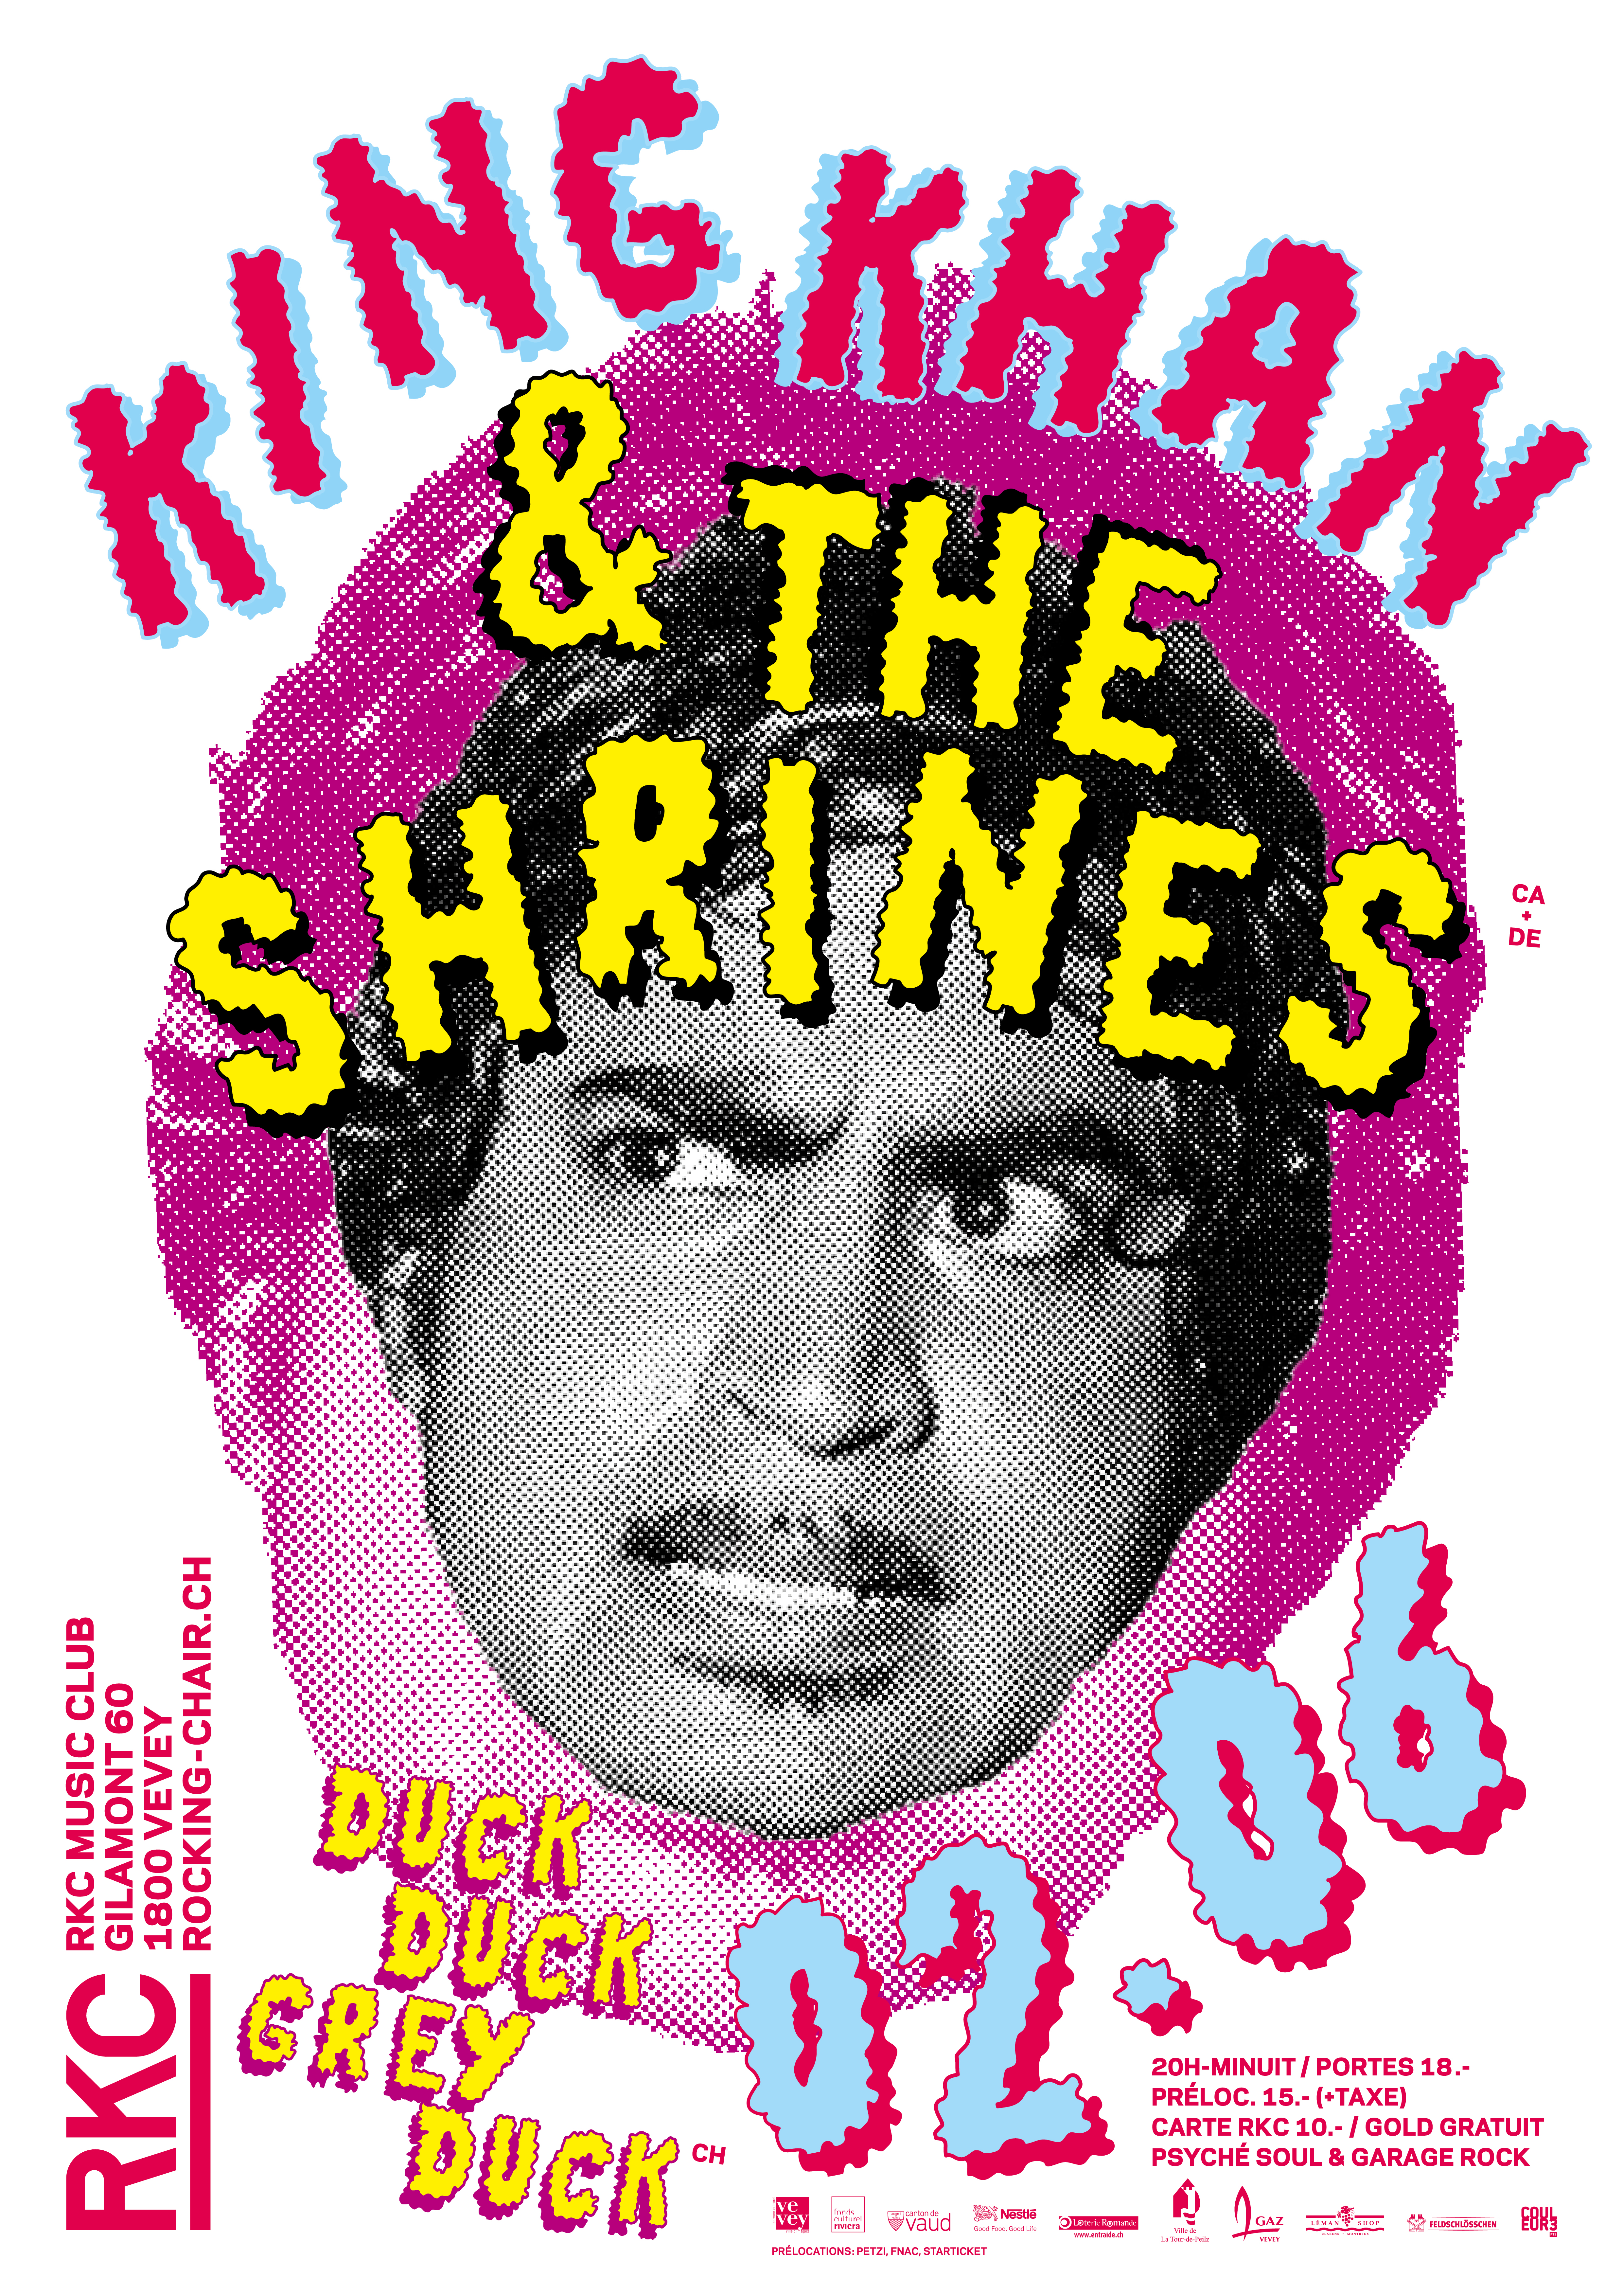 KING KHAN & THE SHRINES (CA/DE) + DUCK DUCK GREY DUCK (CH) - Rocking Chair Vevey